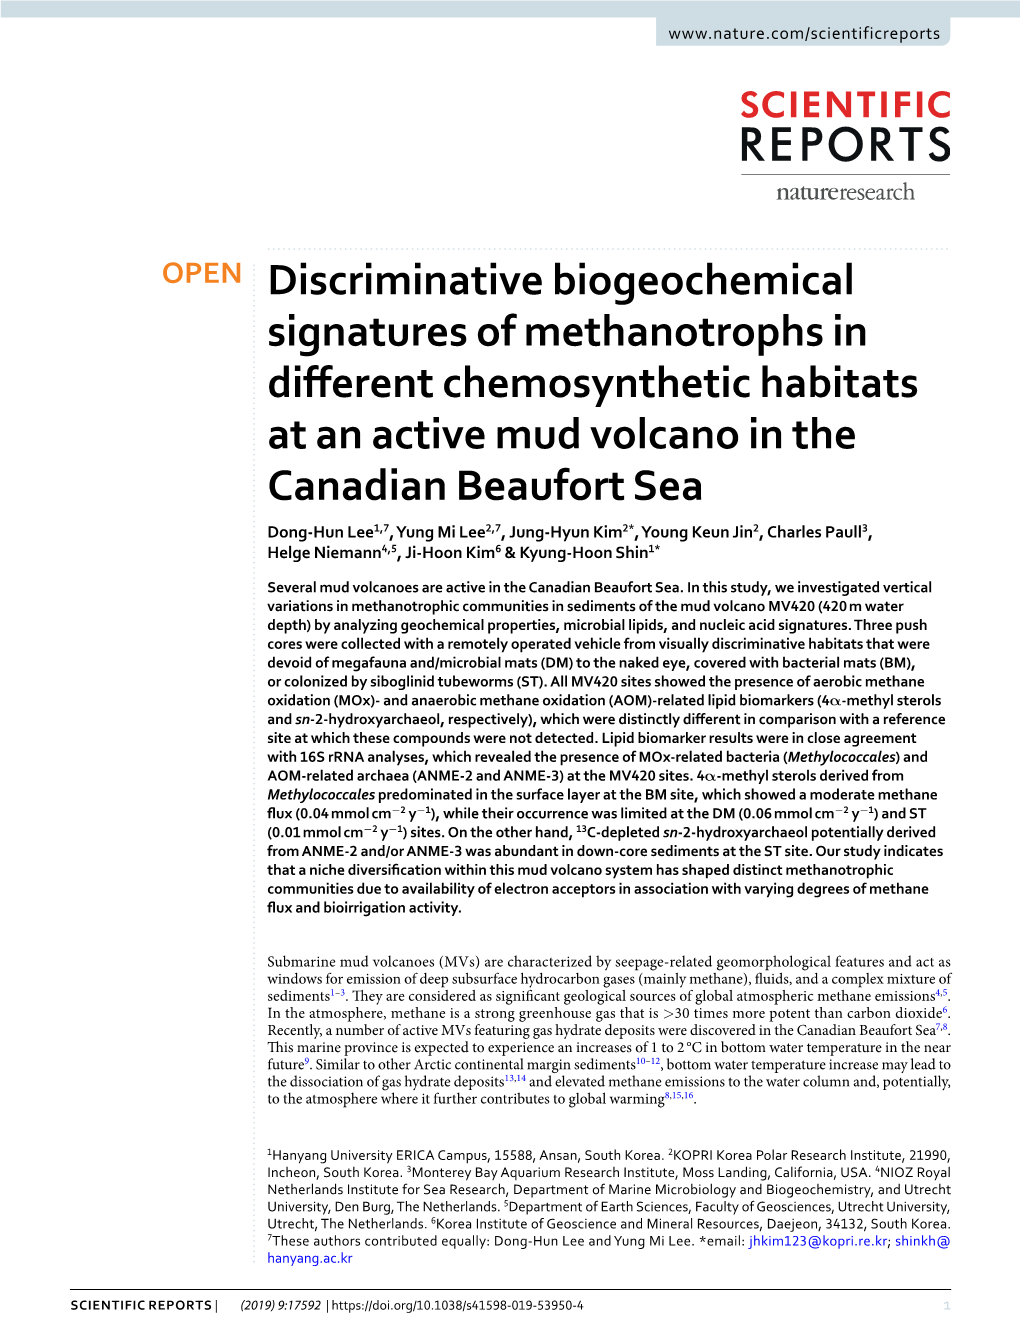 Discriminative Biogeochemical Signatures of Methanotrophs In